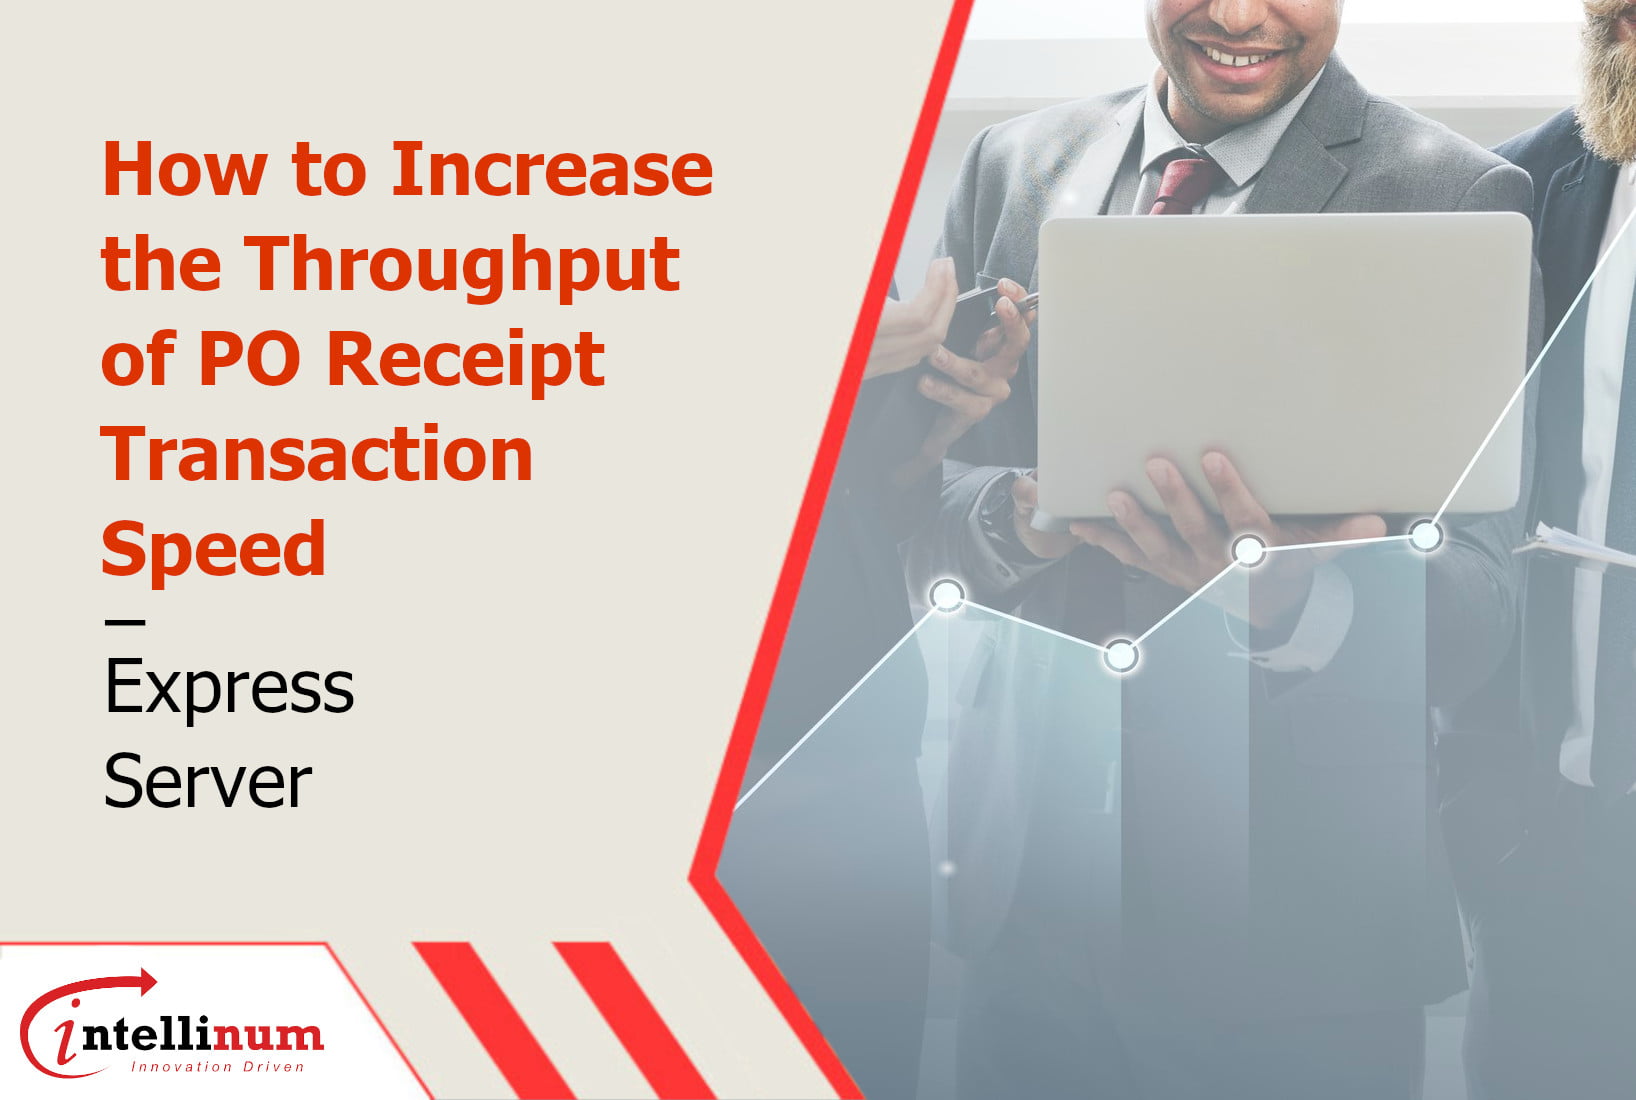 throughput of po receipt transaction speed – express server